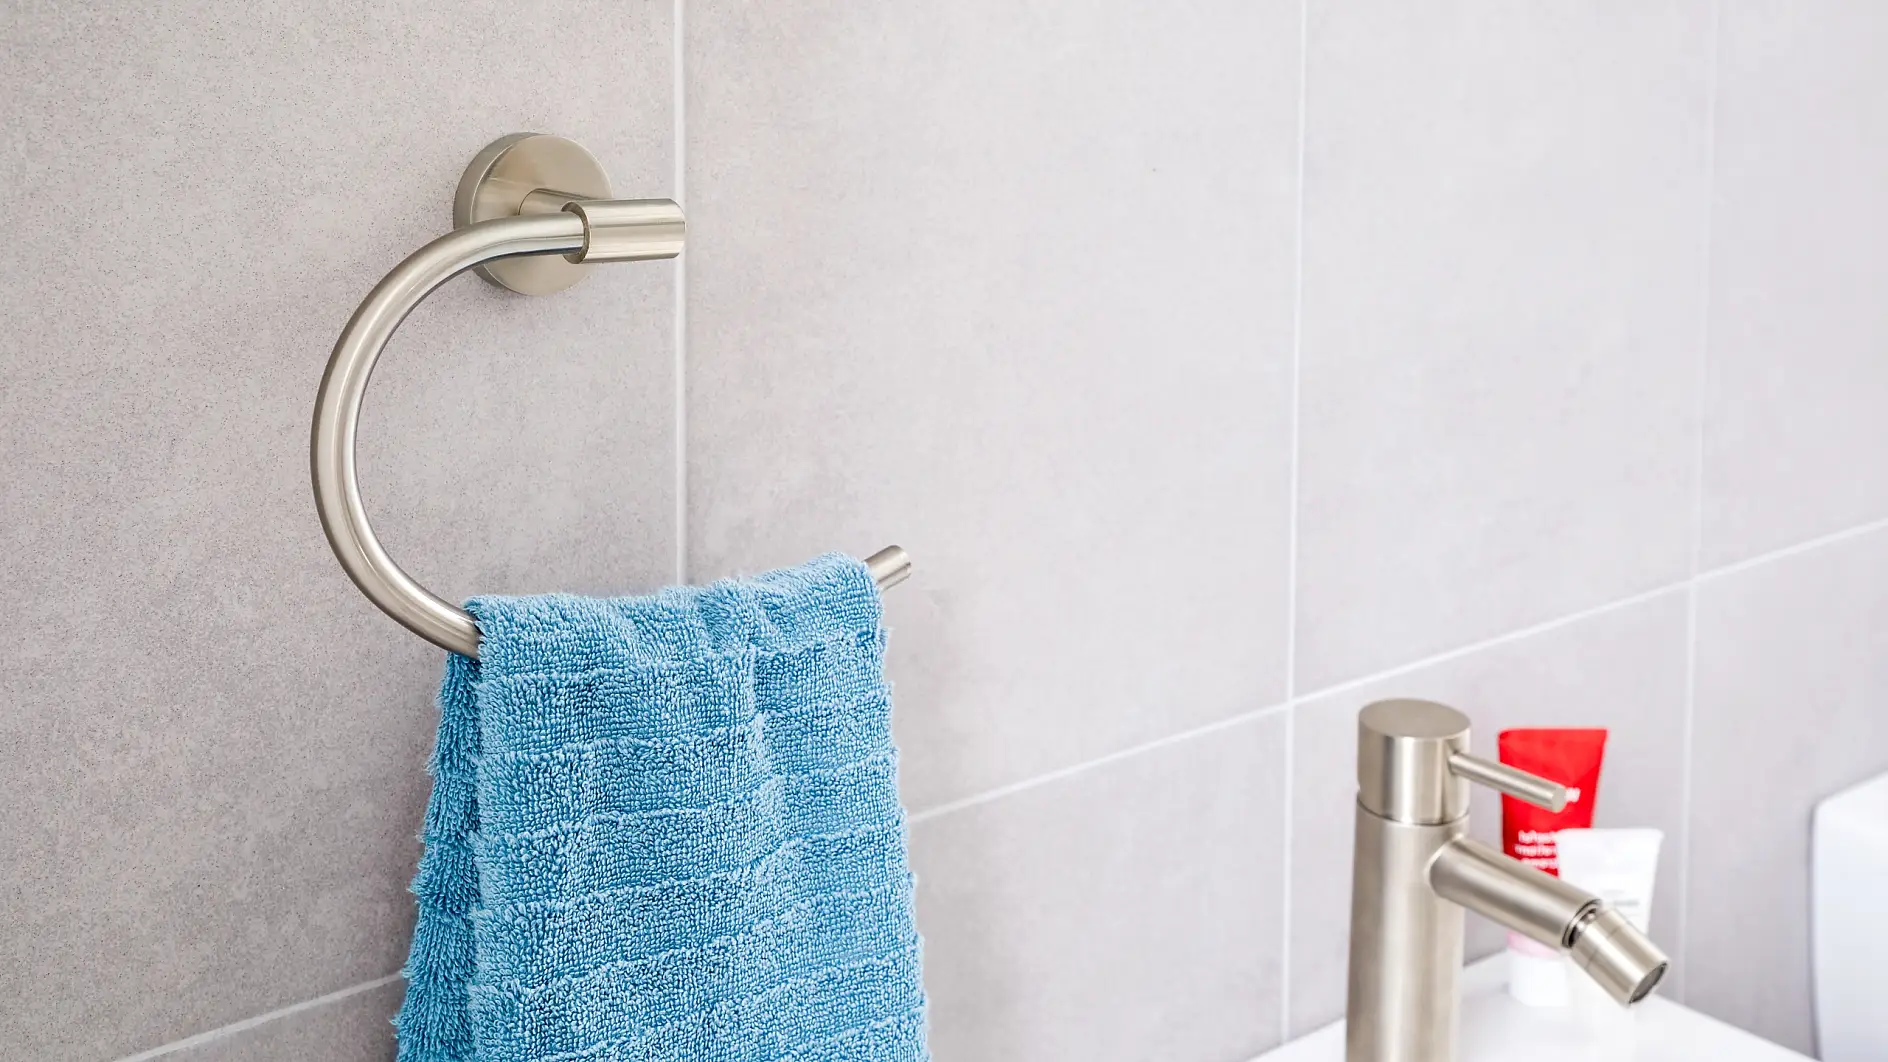 Az elegáns dizájn és a praktikus kialakítás találkozik, hogy a mosdókagyló mellett is mindig legyen kéznél törölköző.